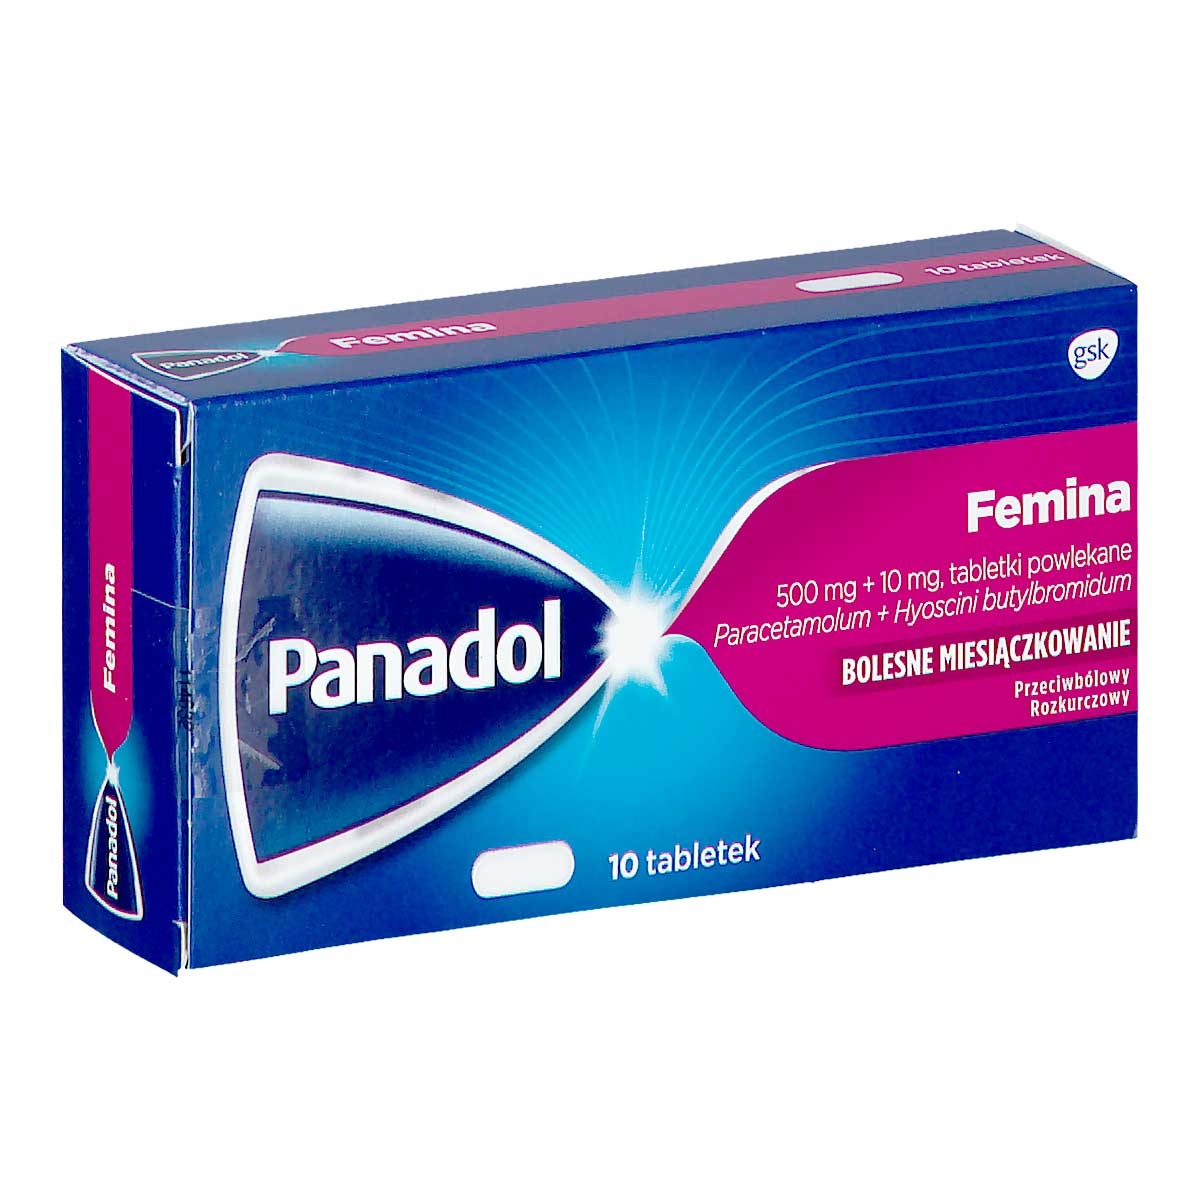 panadol femina tabletki 10